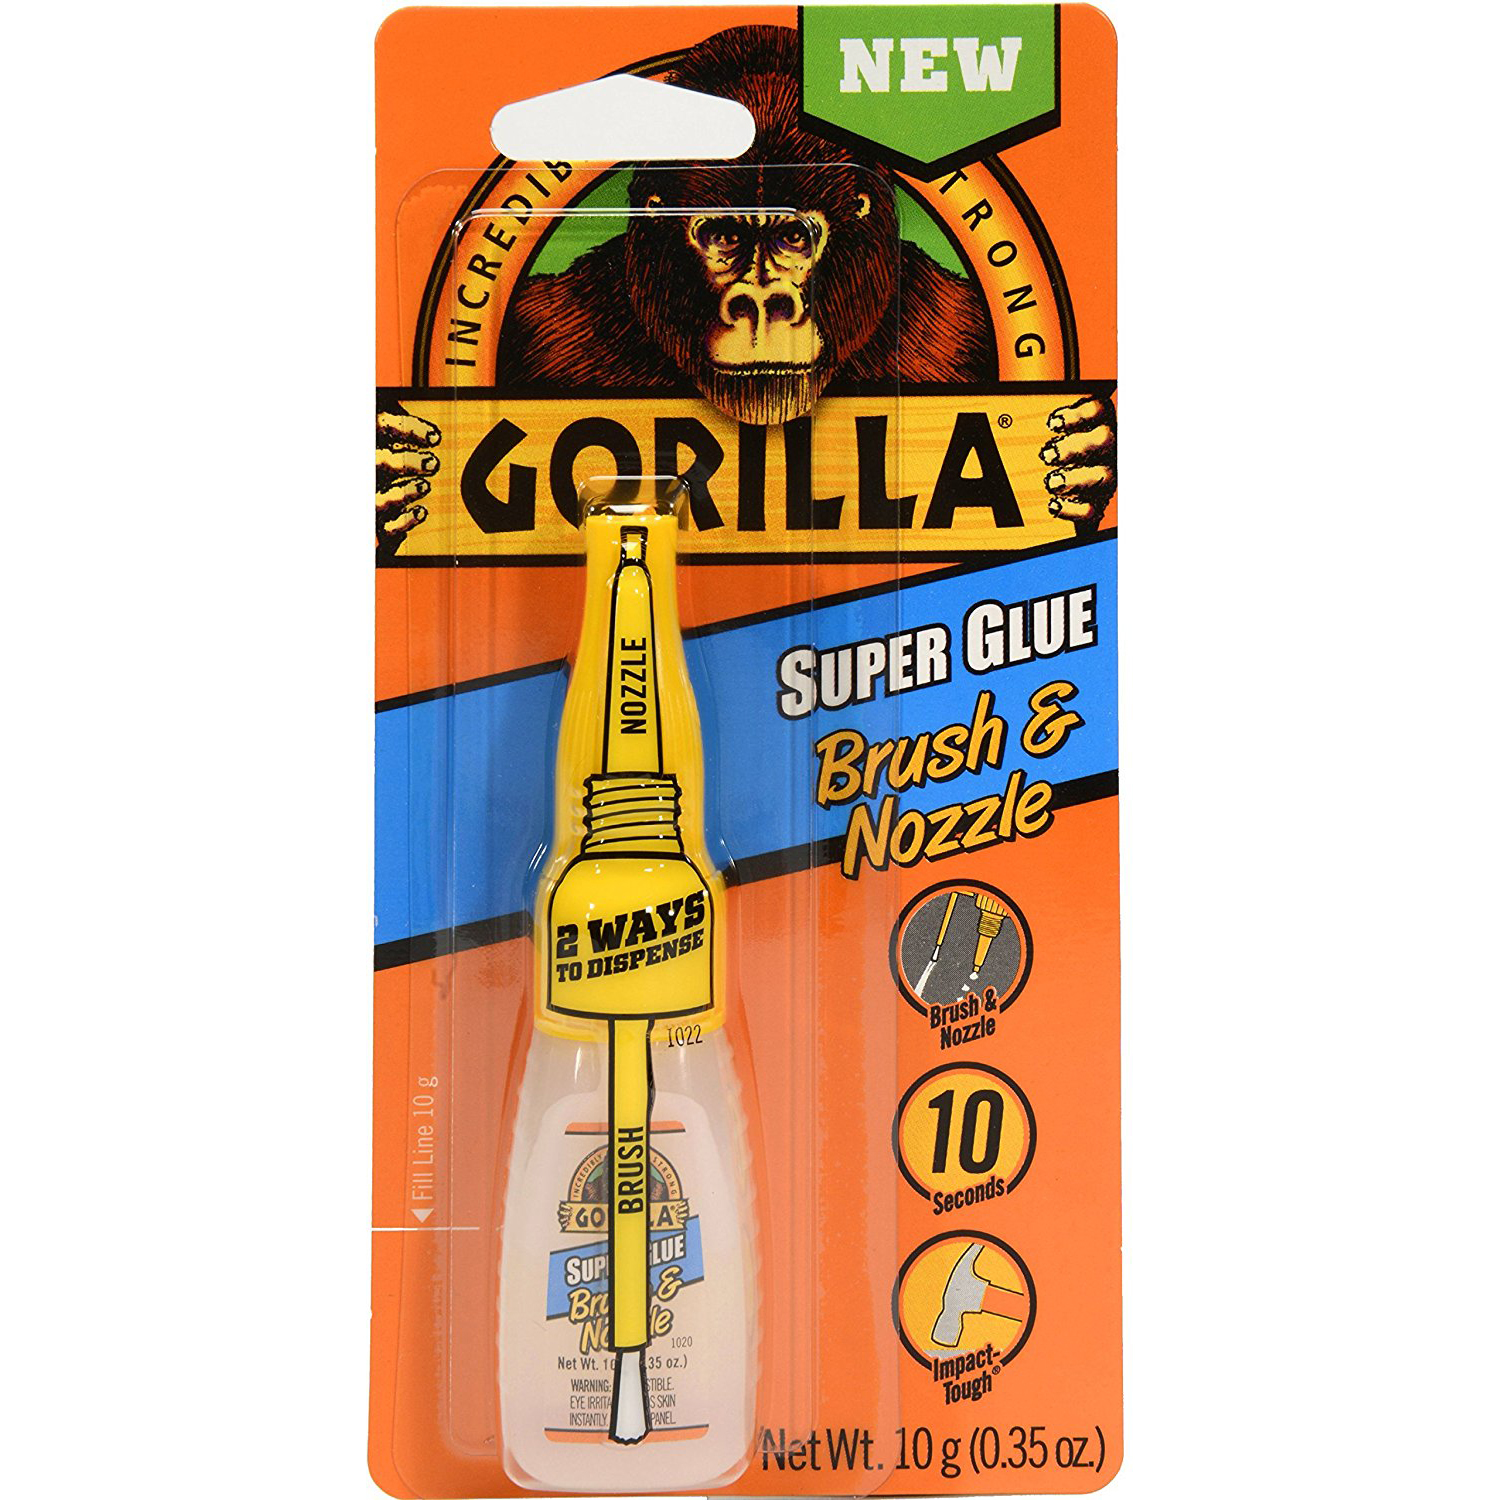 Gorilla Super Glue Brush &amp; Nozzle